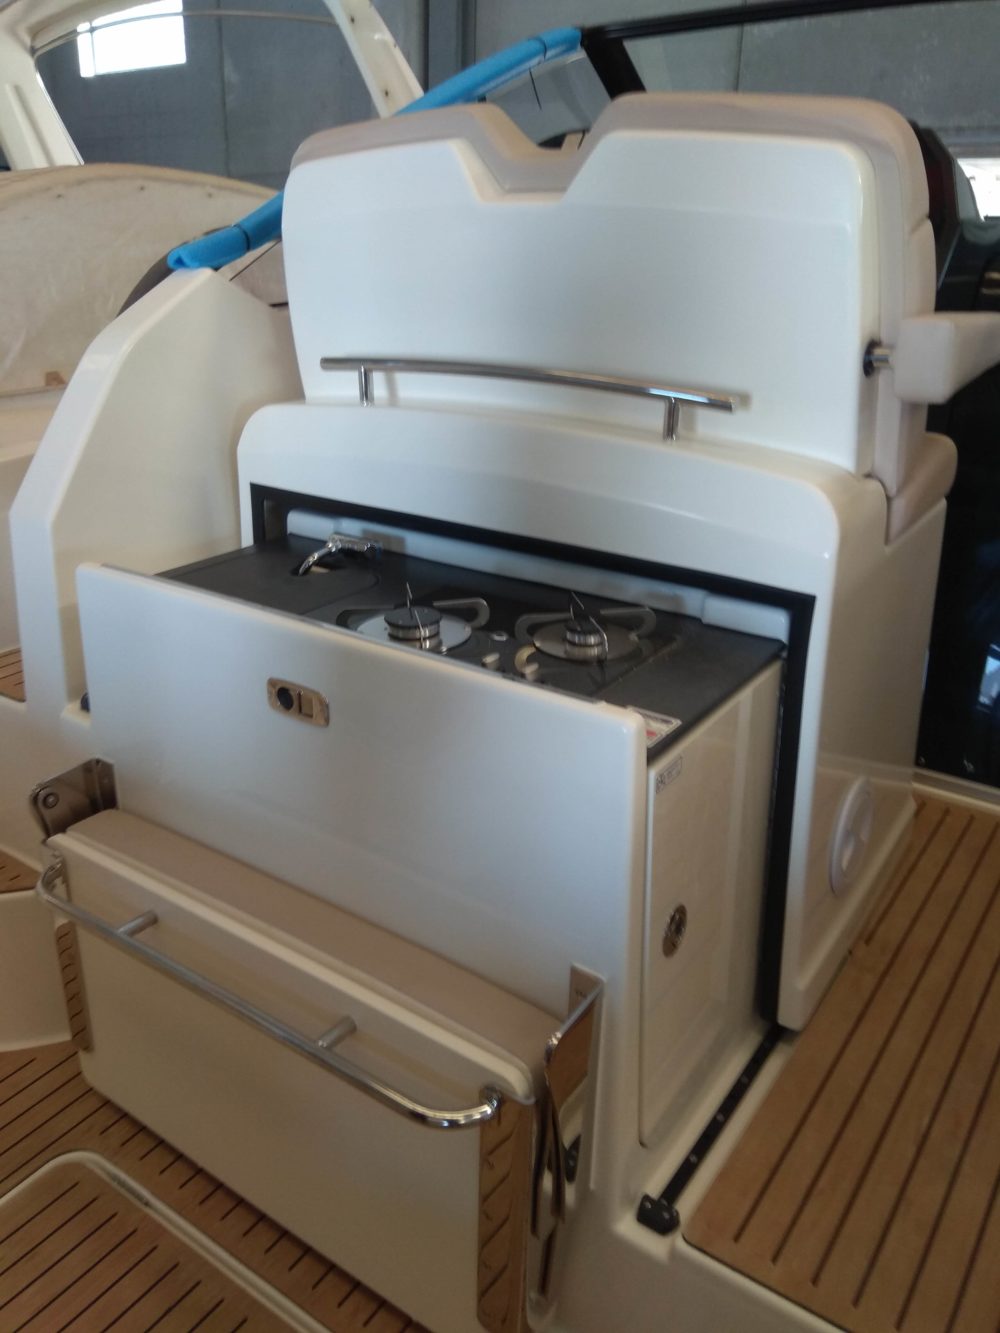 embarcacion quicksilver 875 sundeck motor fueraborda mercury oferta salon nautico barcelona cupon descuento